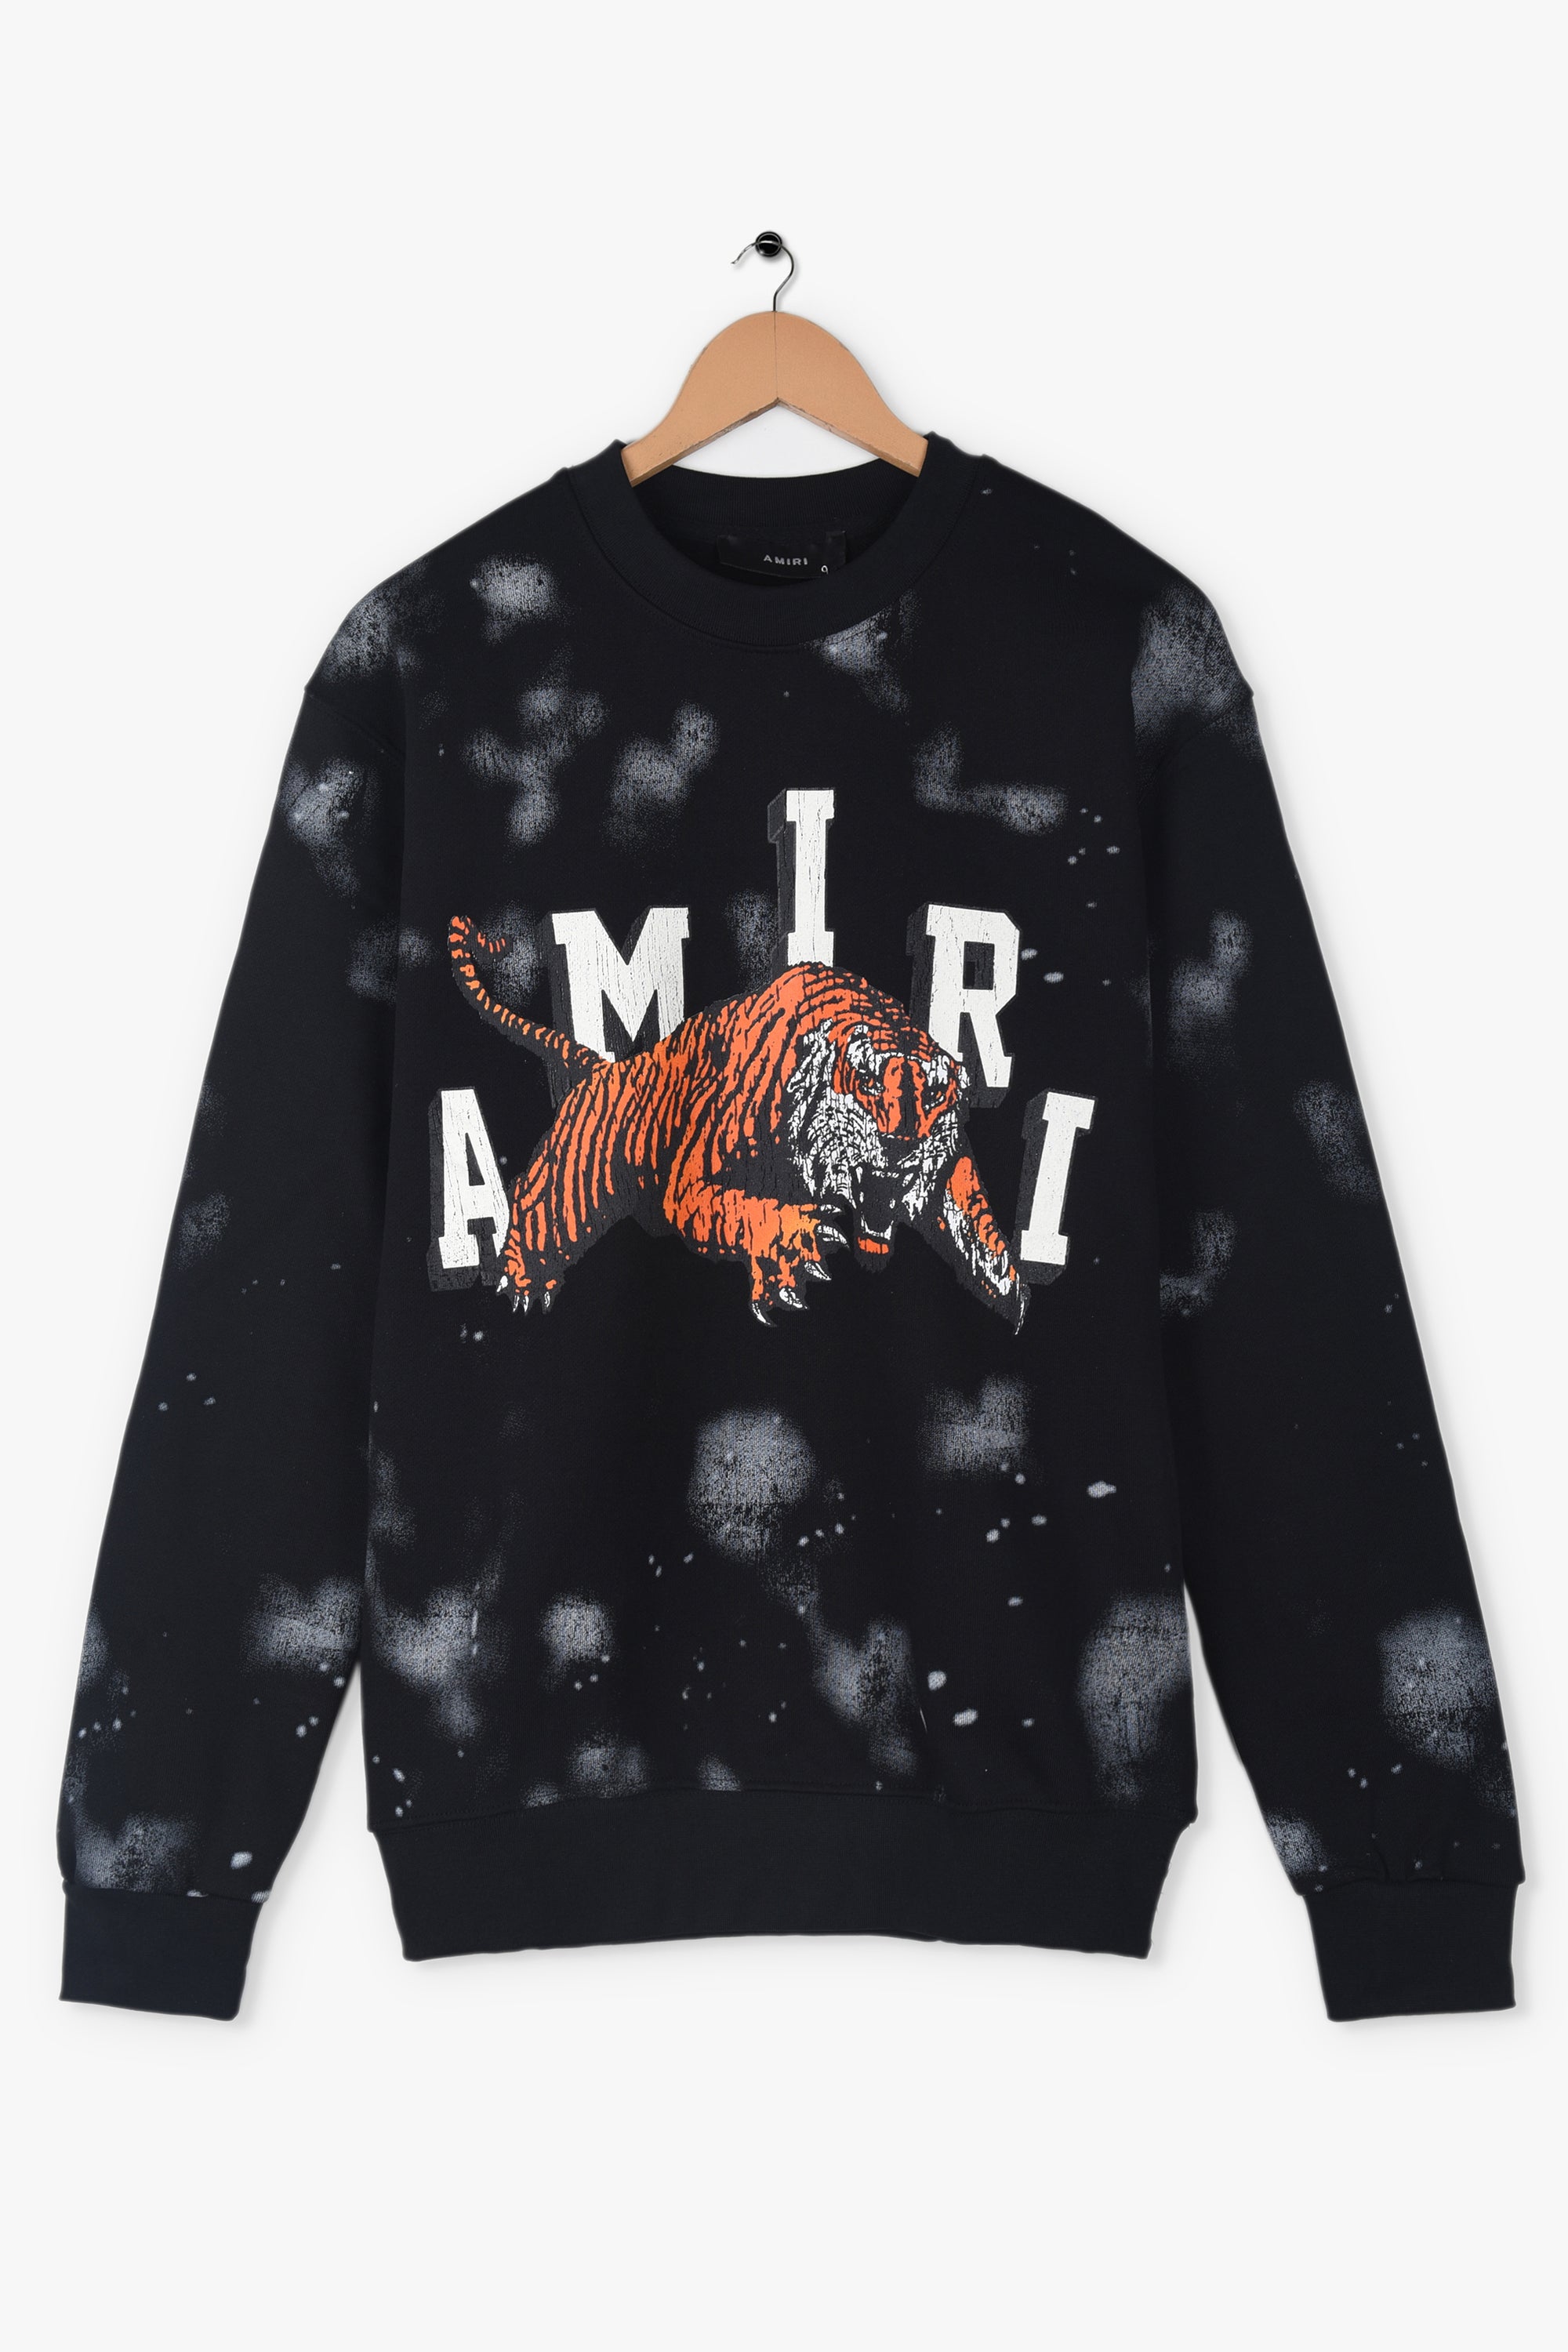 Amiri Black Vintage Tiger Sweatshirt